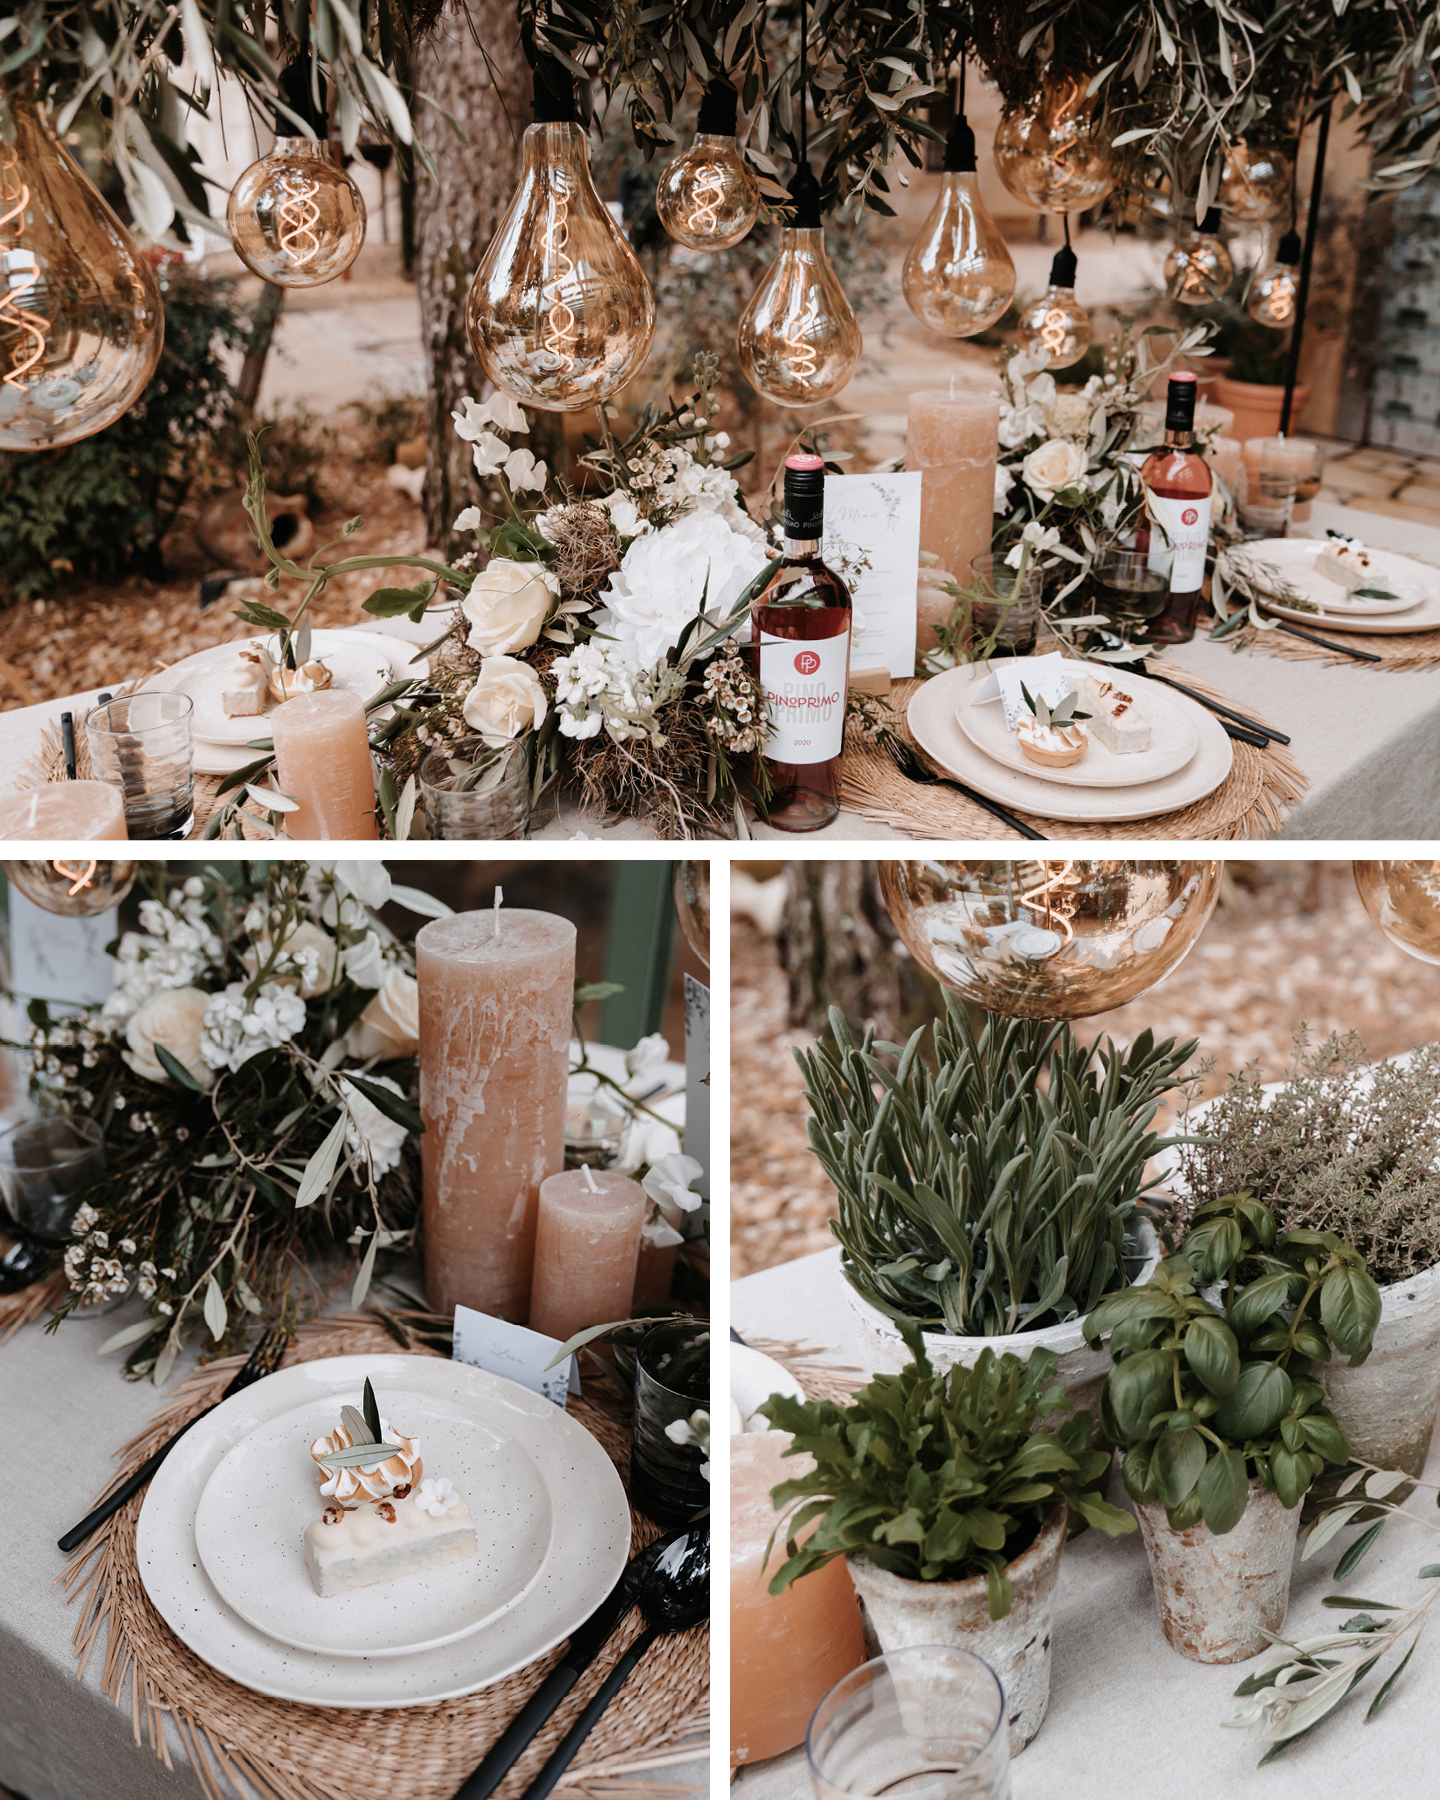 Die Hochzeitstafel ist passend zum Boho Greenery Look mit frischen Kräutern in rustikalen Töpfen dekoriert.